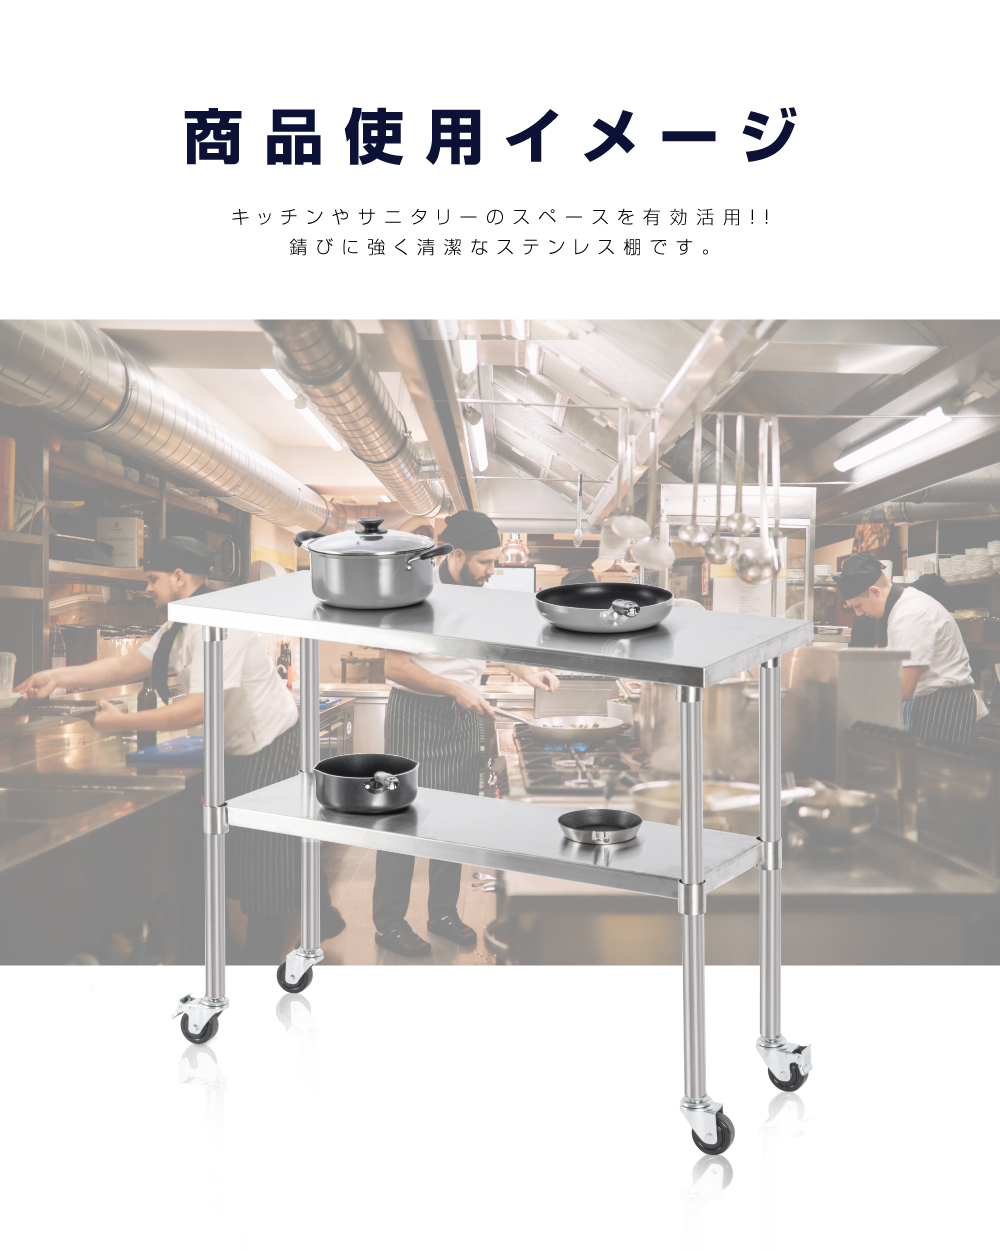 日本製 ステンレス 作業台 キャスター付き 調理台 W1200mm×H800×D600mm ステンレス調理台 調理 厨房作業台 テーブル キッチン作業台 送料無料 kot2ca-12060 - 0